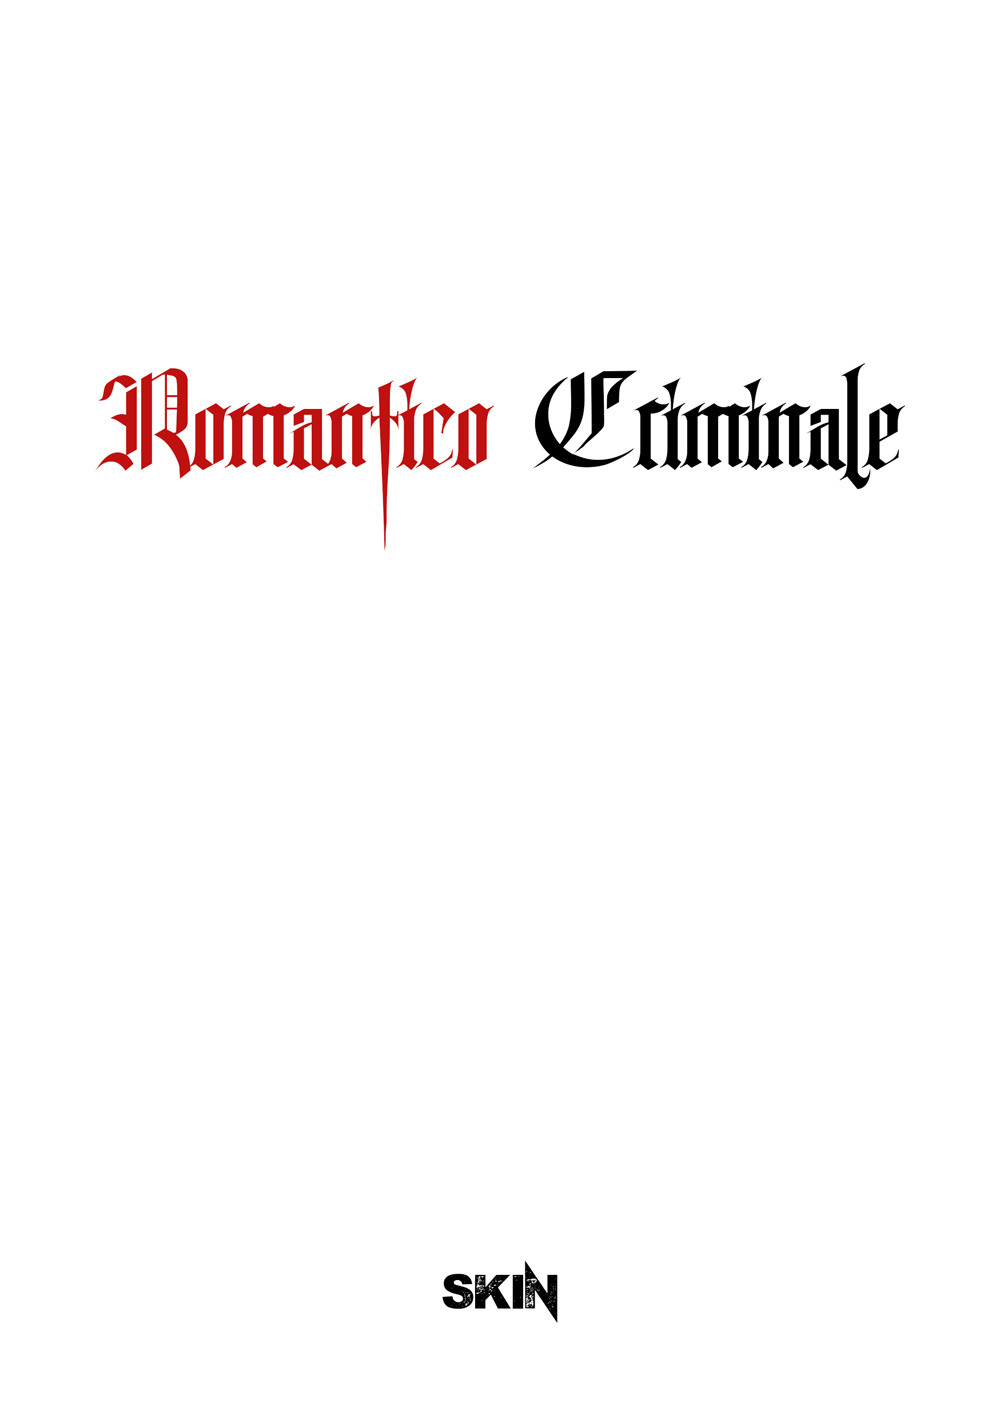 Romantico criminale